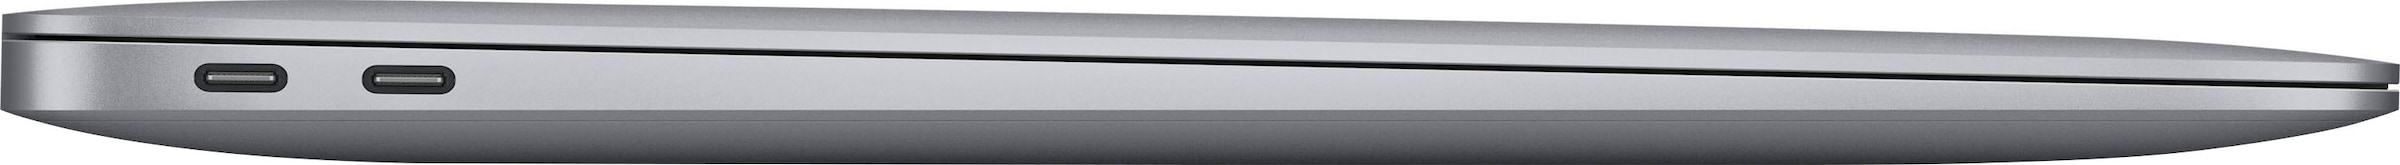 Apple Notebook »MacBook Air«, cm, CPU 13,3 auf SSD, M1, kaufen Zoll, GB 8-core / M1, 512 Raten Apple, 33,78